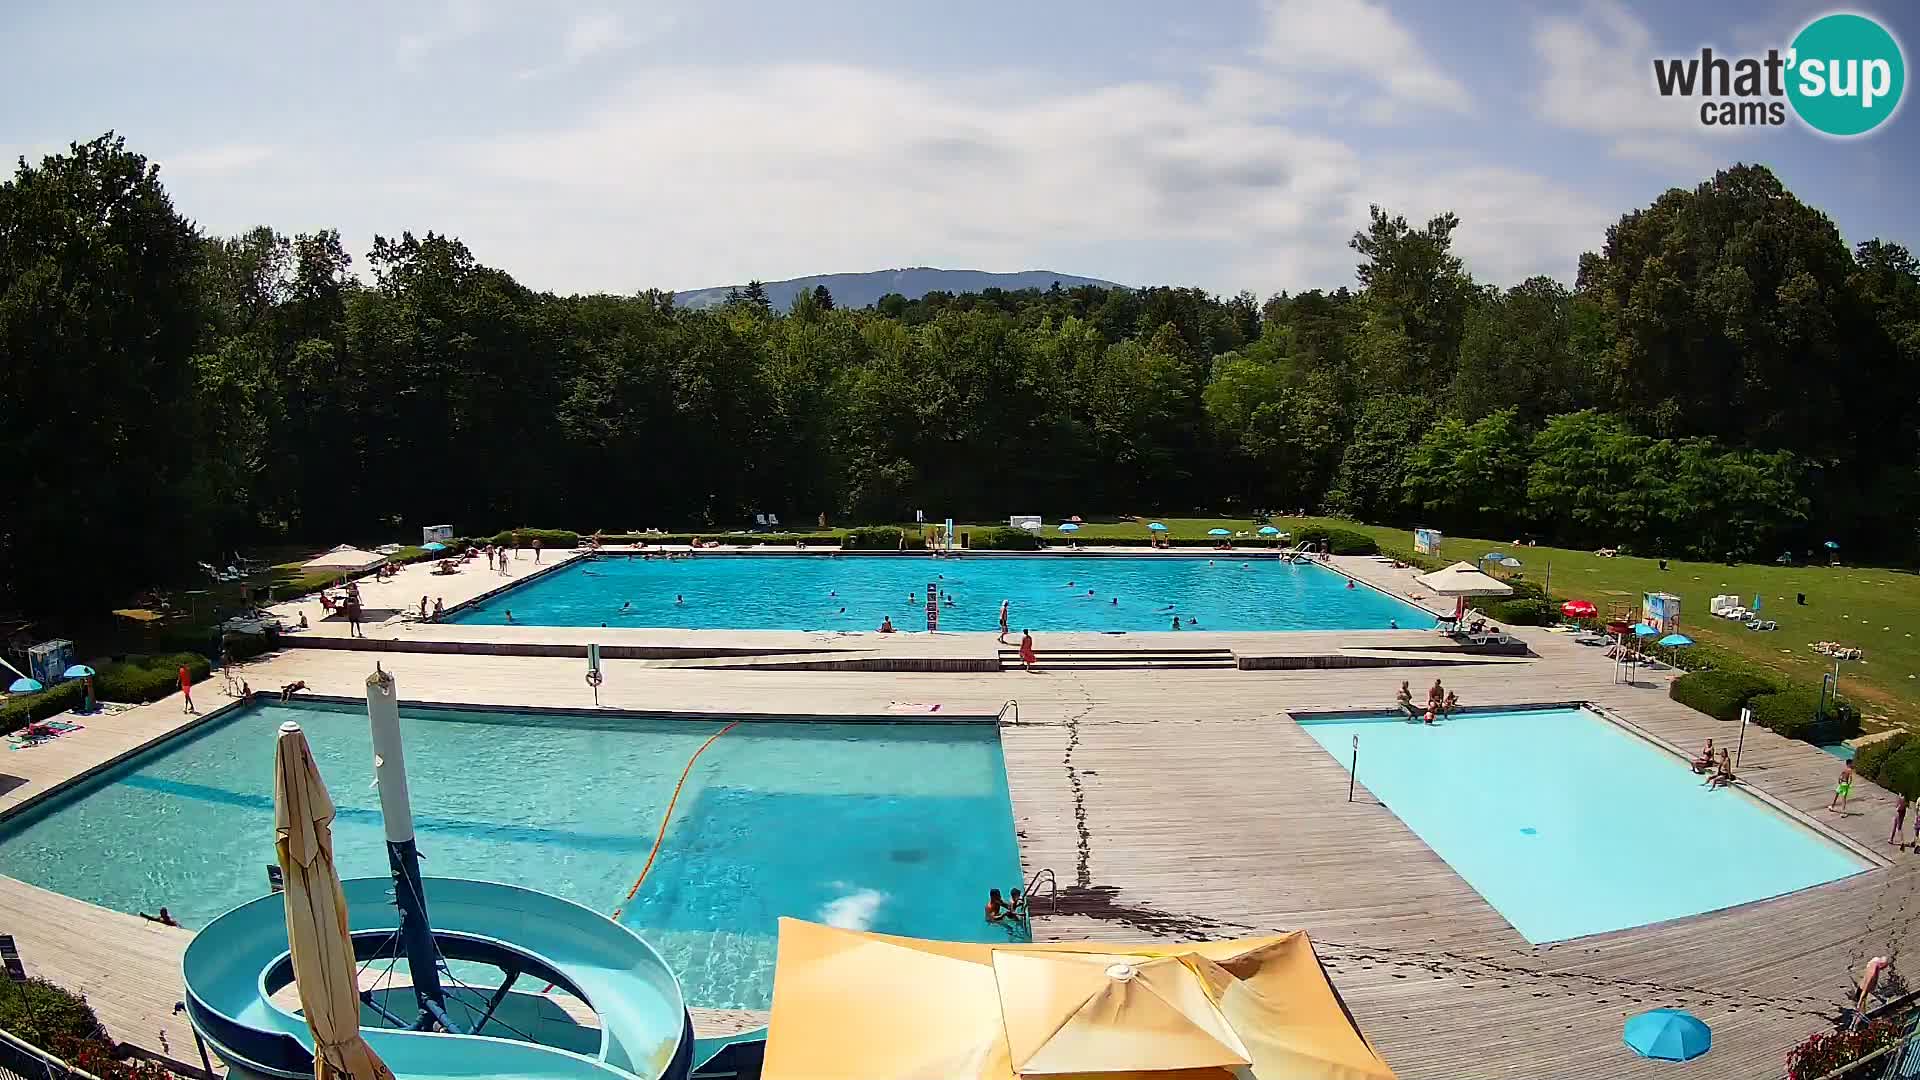 Cámara web en la piscina de la isla de Maribor